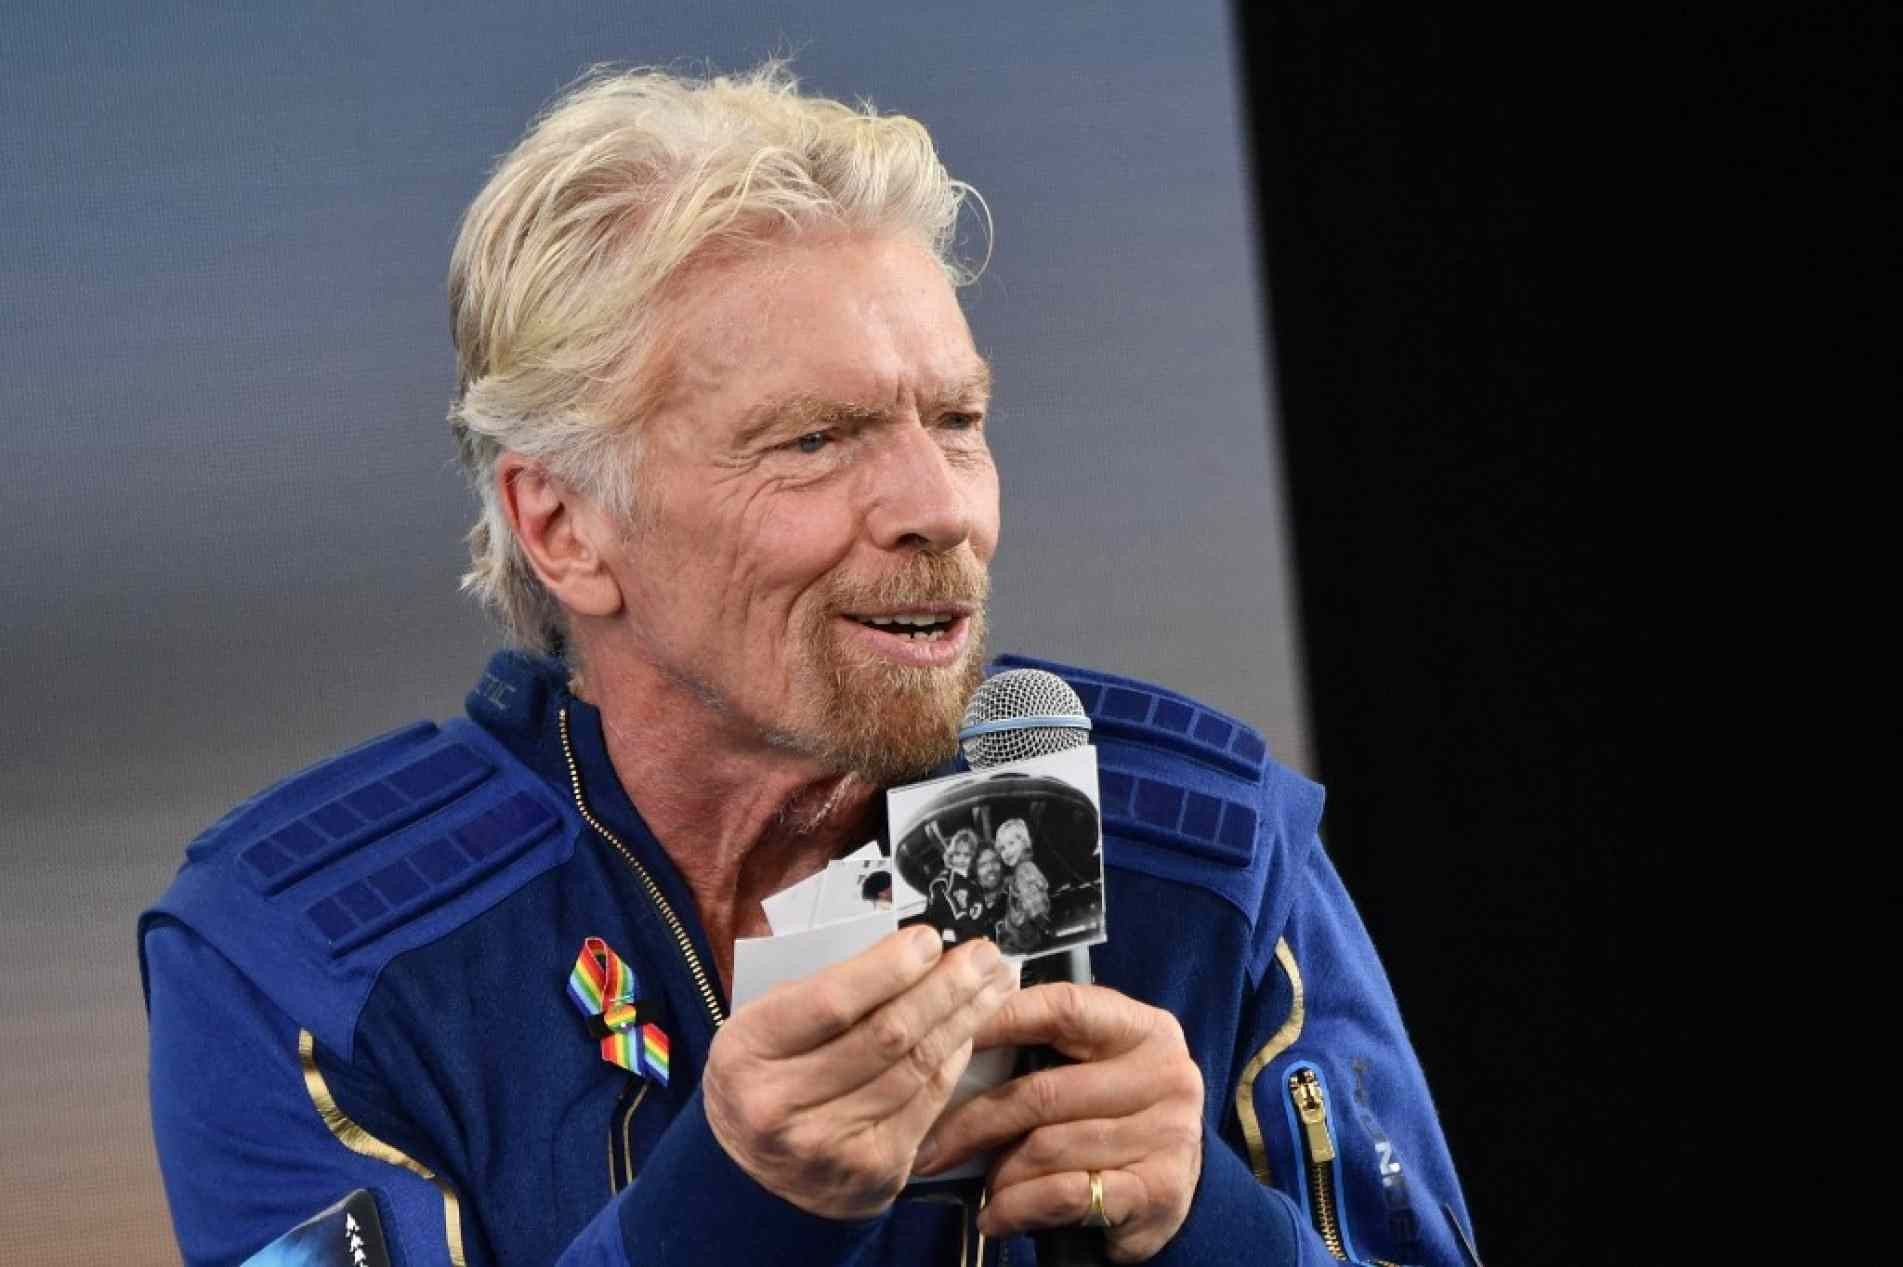 Richard Branson mostra fotos que levou para o espaço a bordo de uma nave da Virgin Galactic